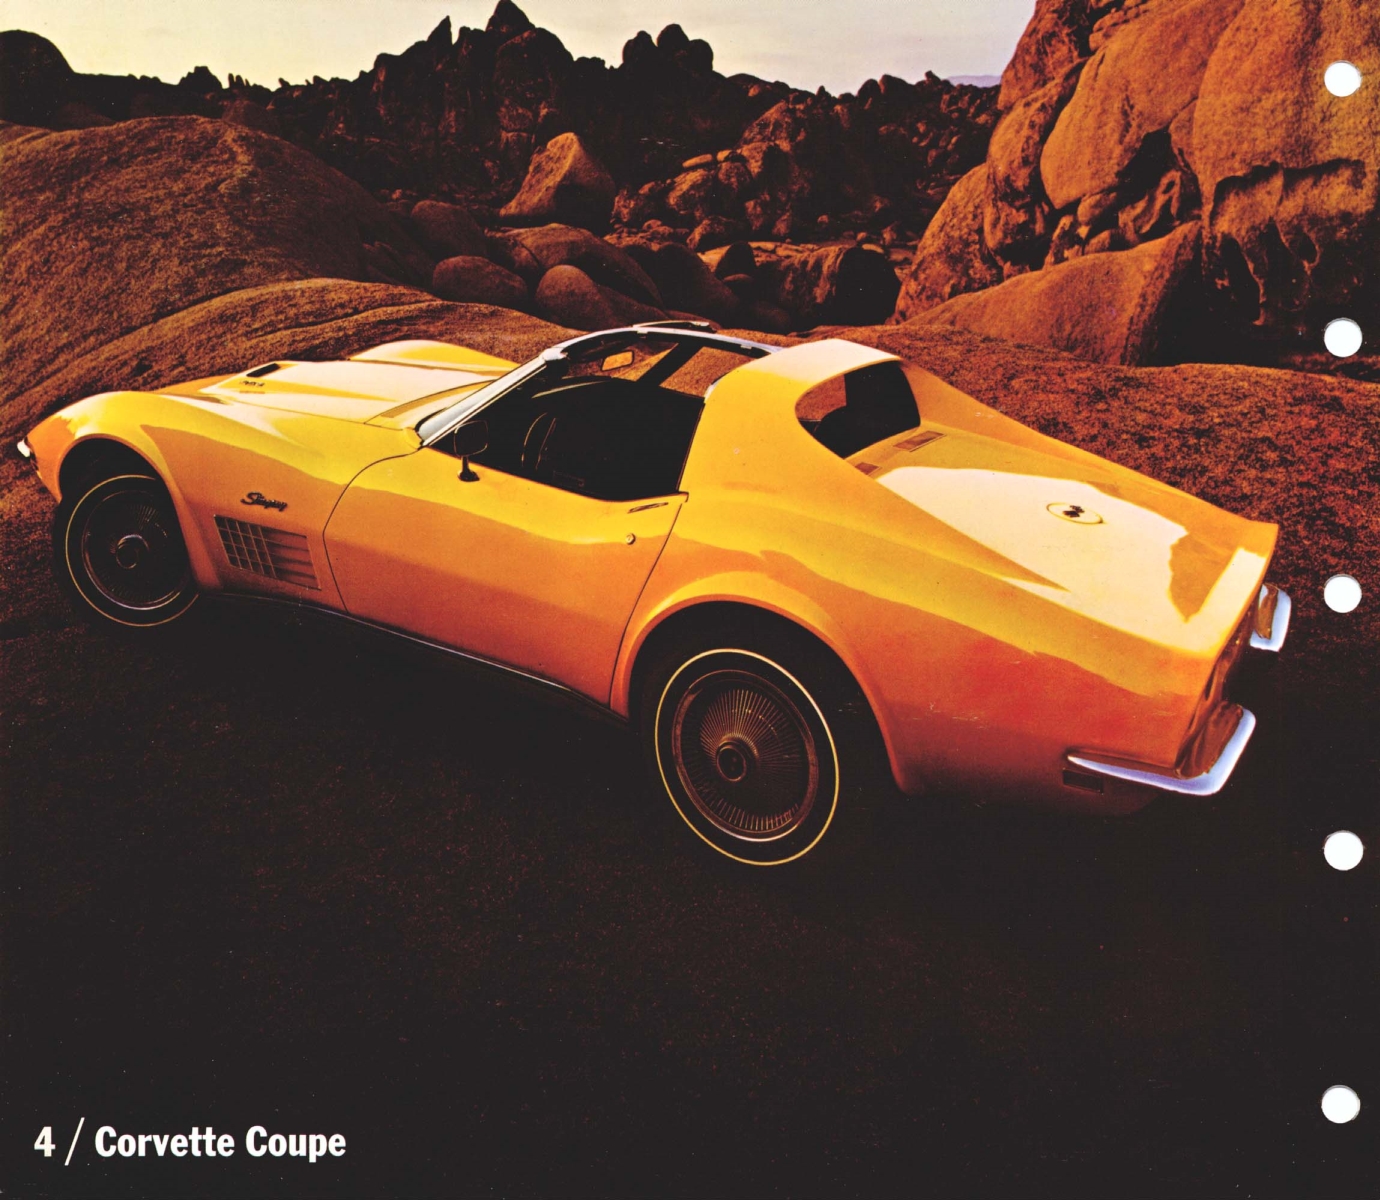 1970_Chevrolet_Dealer_Album-07-04